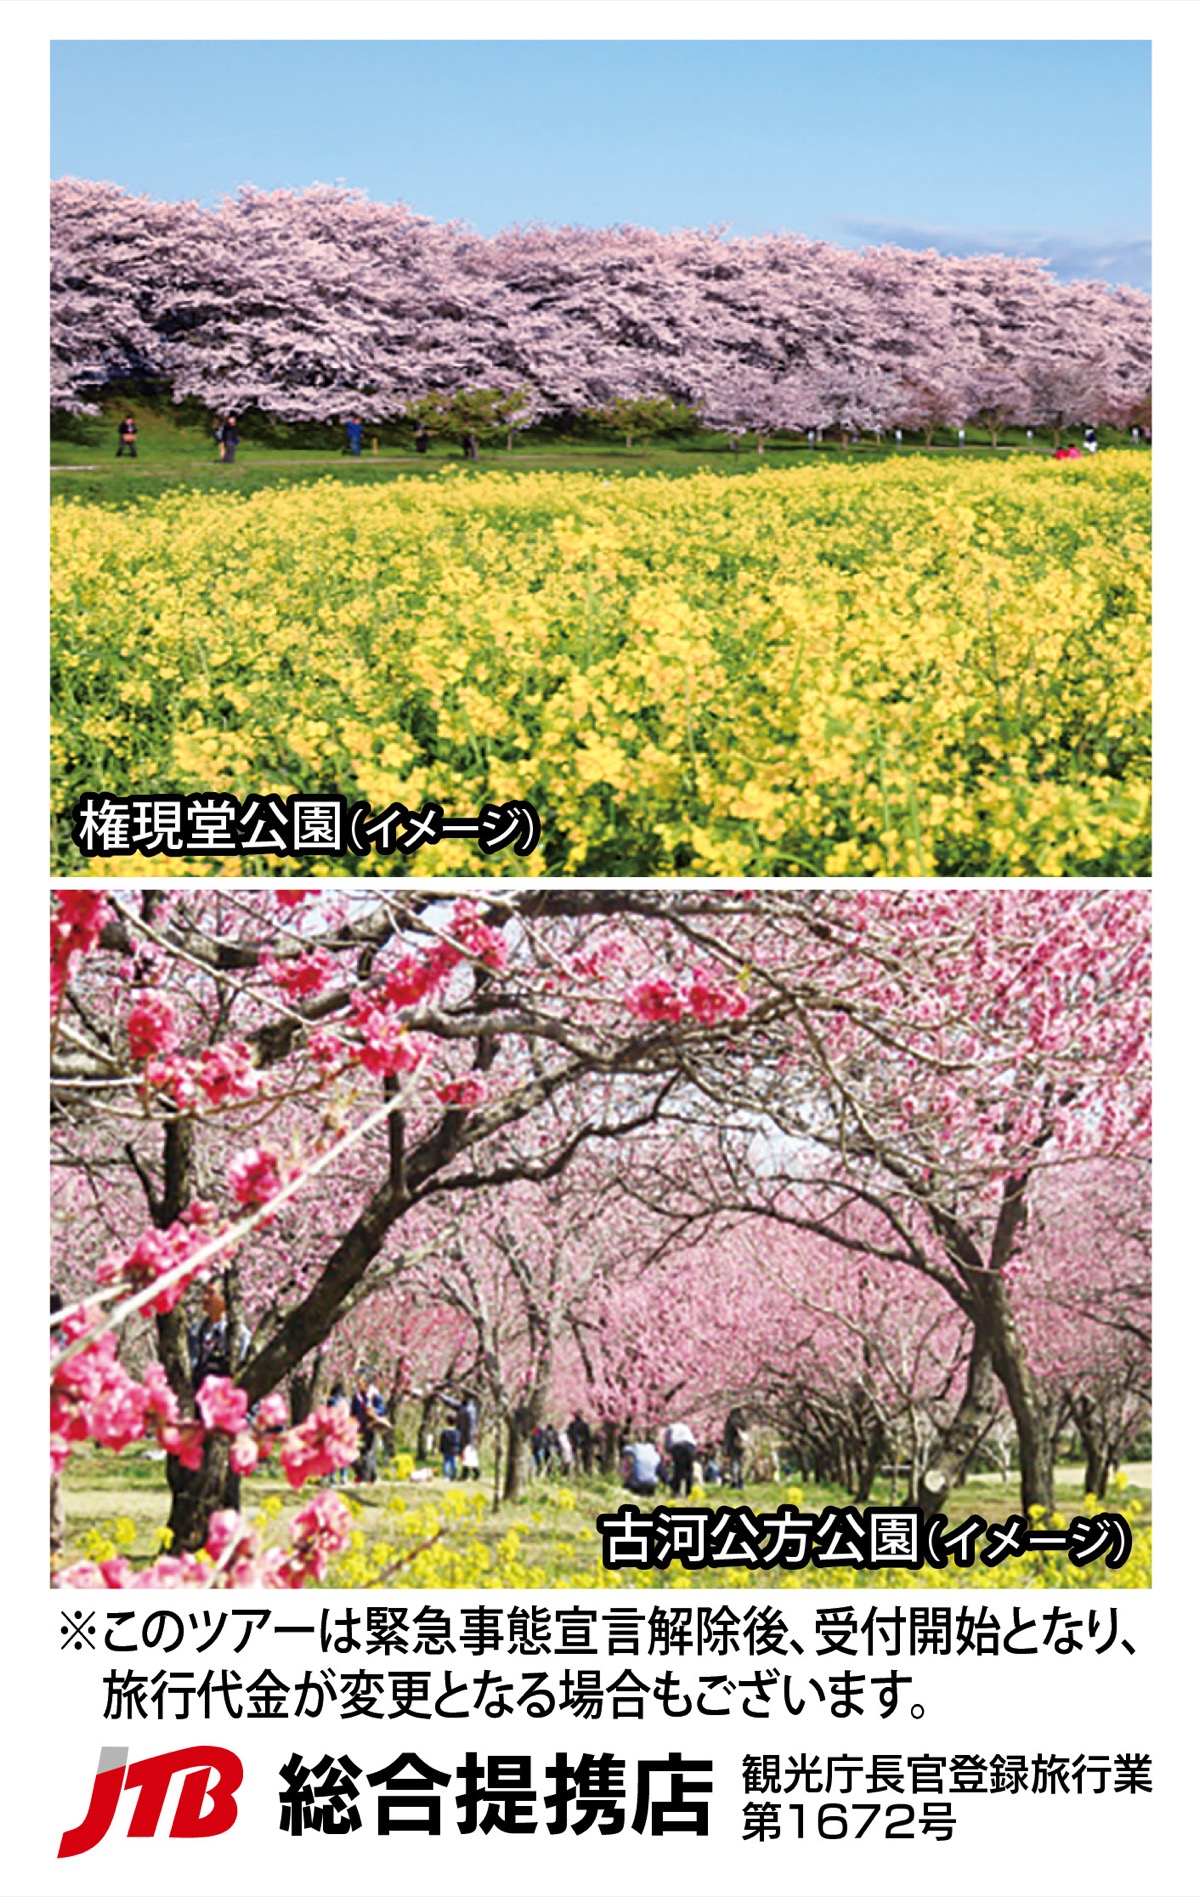 桜のトンネル 権現堂桜堤と古河･花桃